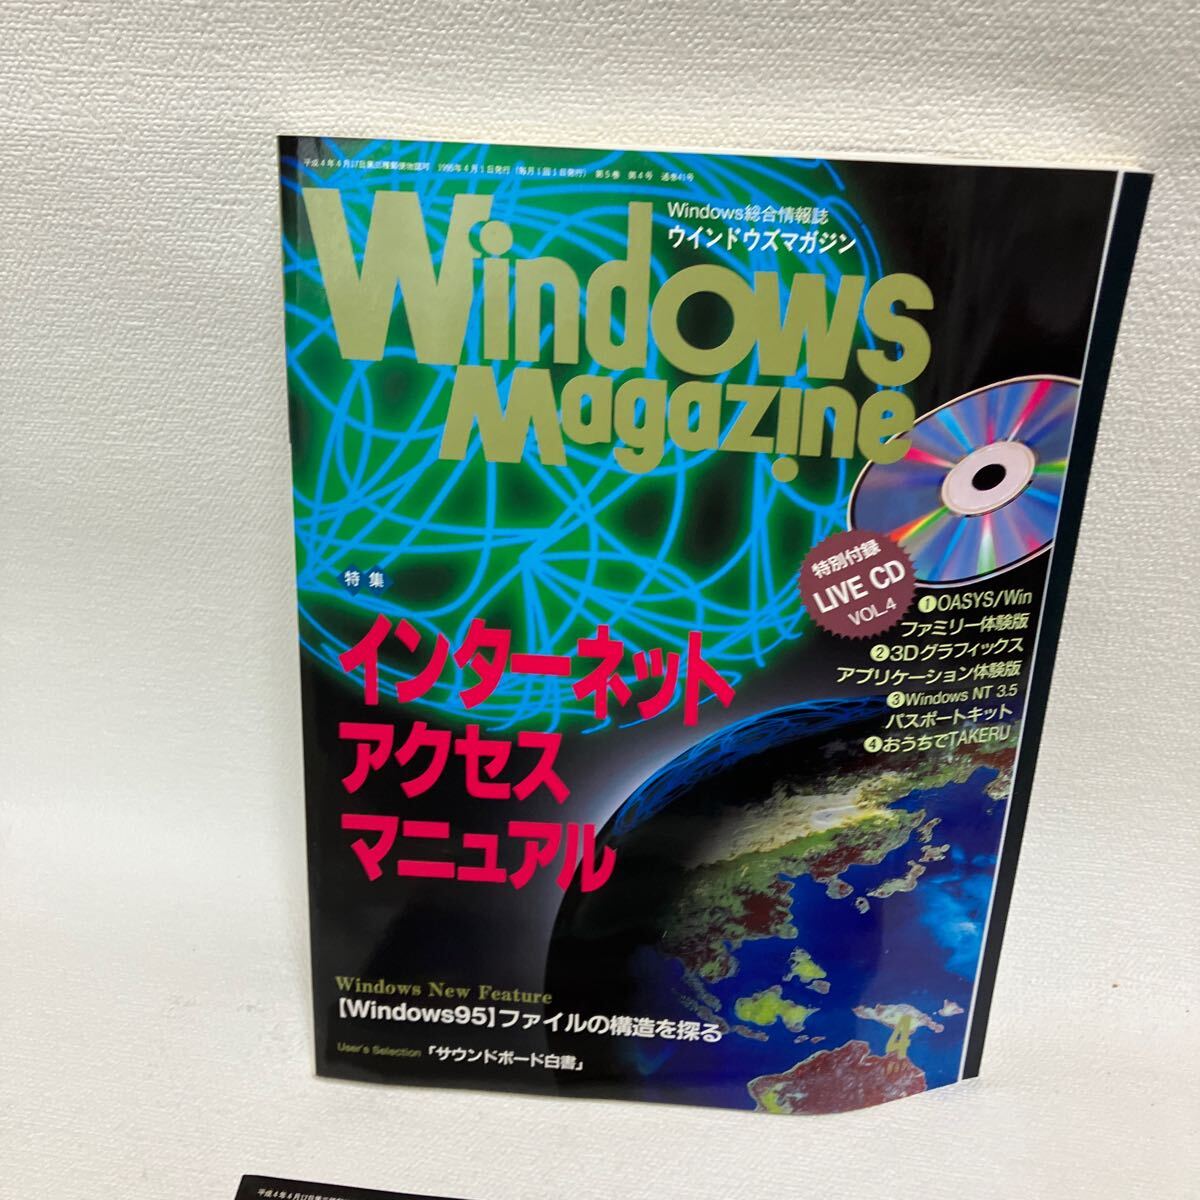 c352-26 80 雑誌 Windows Magazine ウィンドウズ 活用情報誌 パソコン まとめて インターネット マガジン 付録無し 1995年 汚れ痛み有り